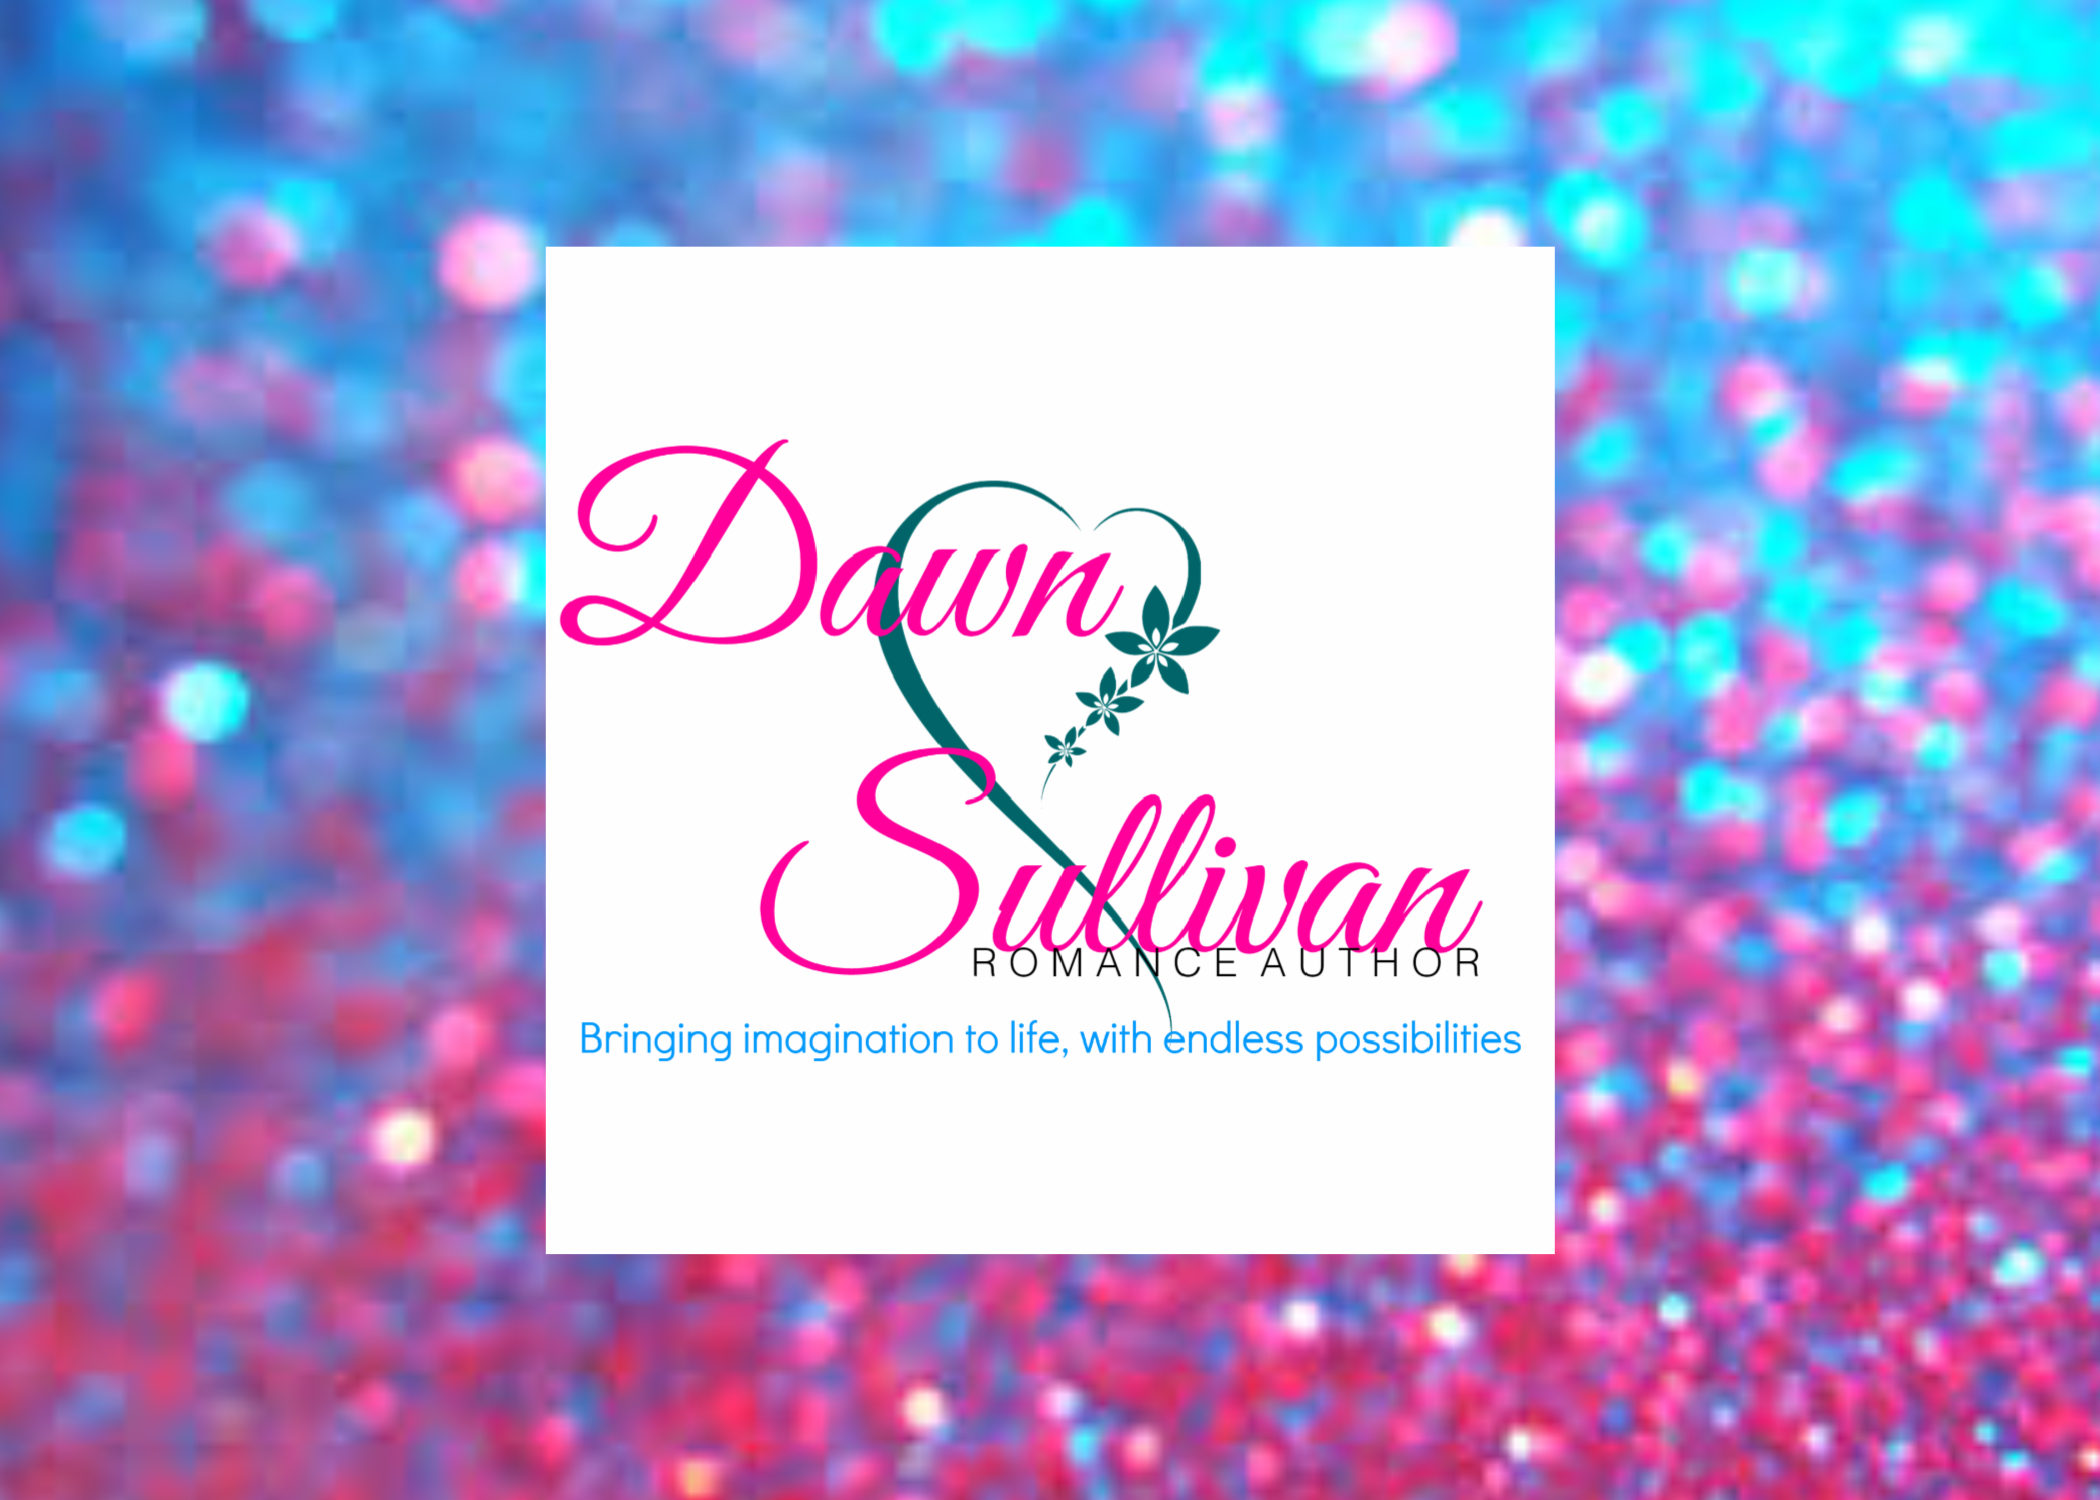 Dawn Sullivan Author